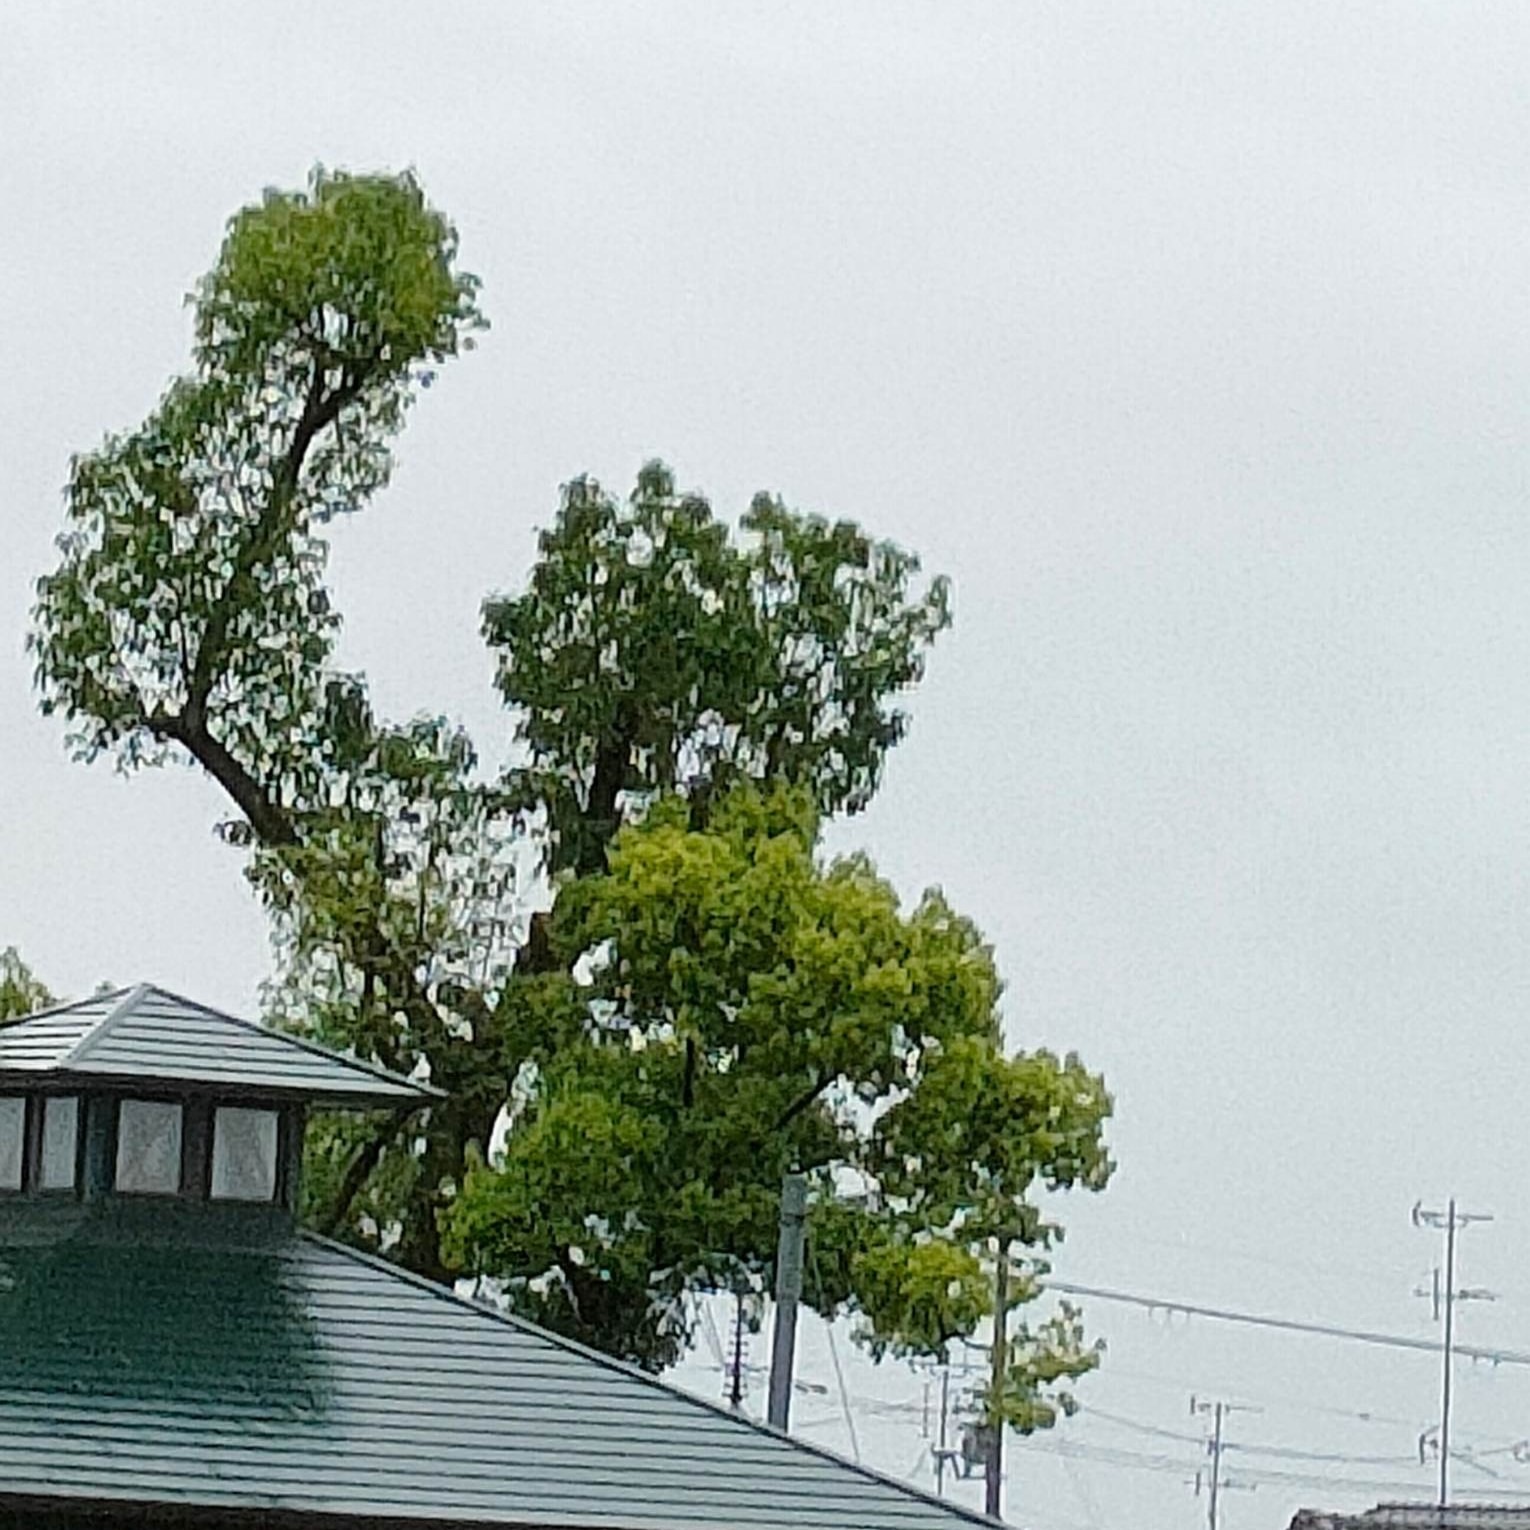 【がんばるぞーー】木が見えました手を上げて「がんばるぞー。エイエイオー」って言ってるみたいでした5月の連休最後の日東京に行くために駅へ#奈良県天理市櫟本町のJR駅からこんな枝木が見えて、シャッターを押したのです#面白い木 ＃勇気がわく木(Instagram)